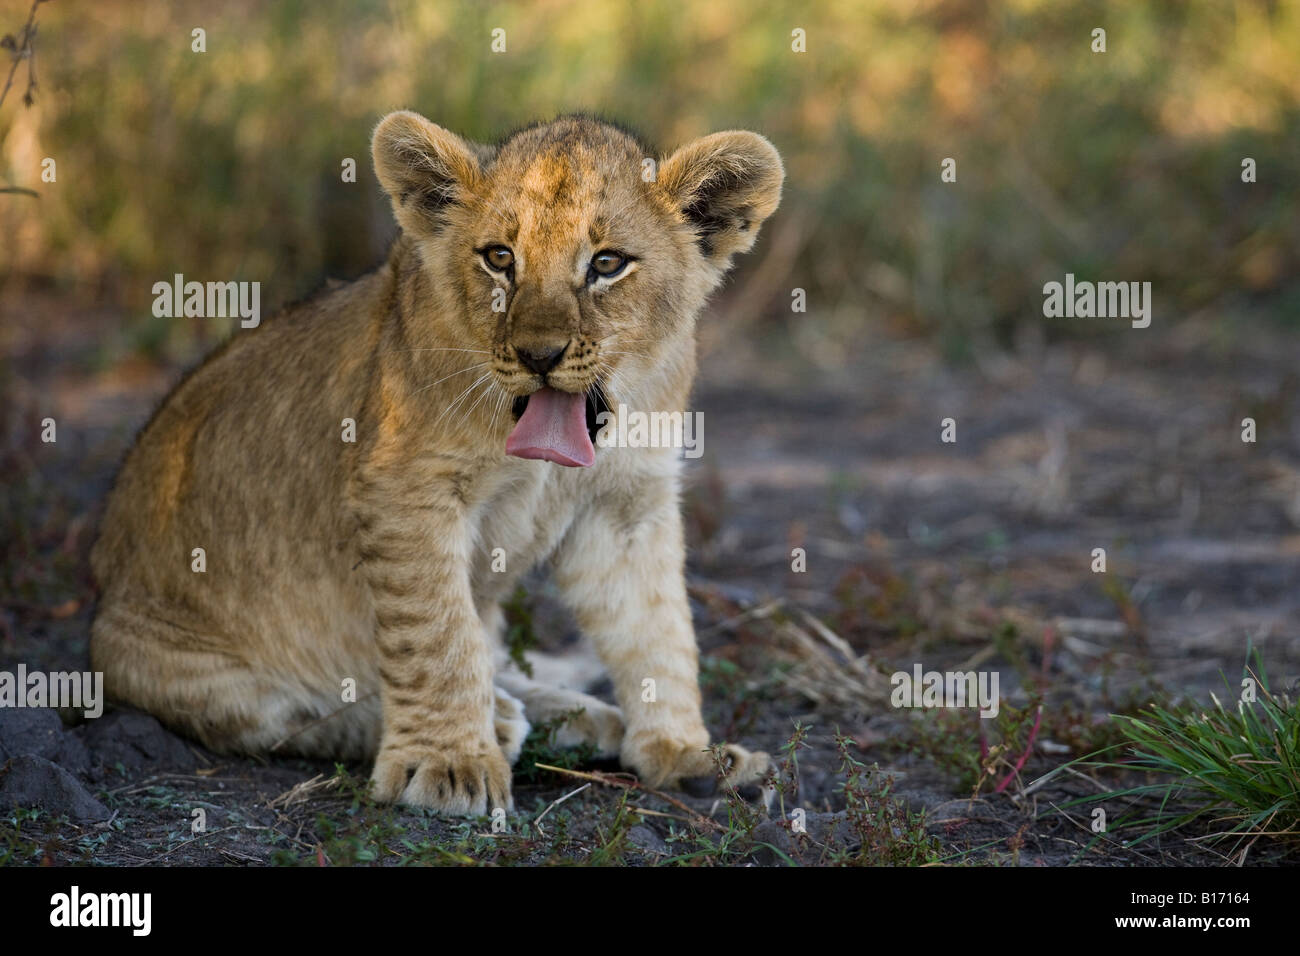 Closeup lustig helle Augen Baby lion Cub seine Zunge heraus haften Gesicht in warmes Sonnenlicht, natürlicher Lebensraum Moremi Okavango Delta Botswana Stockfoto